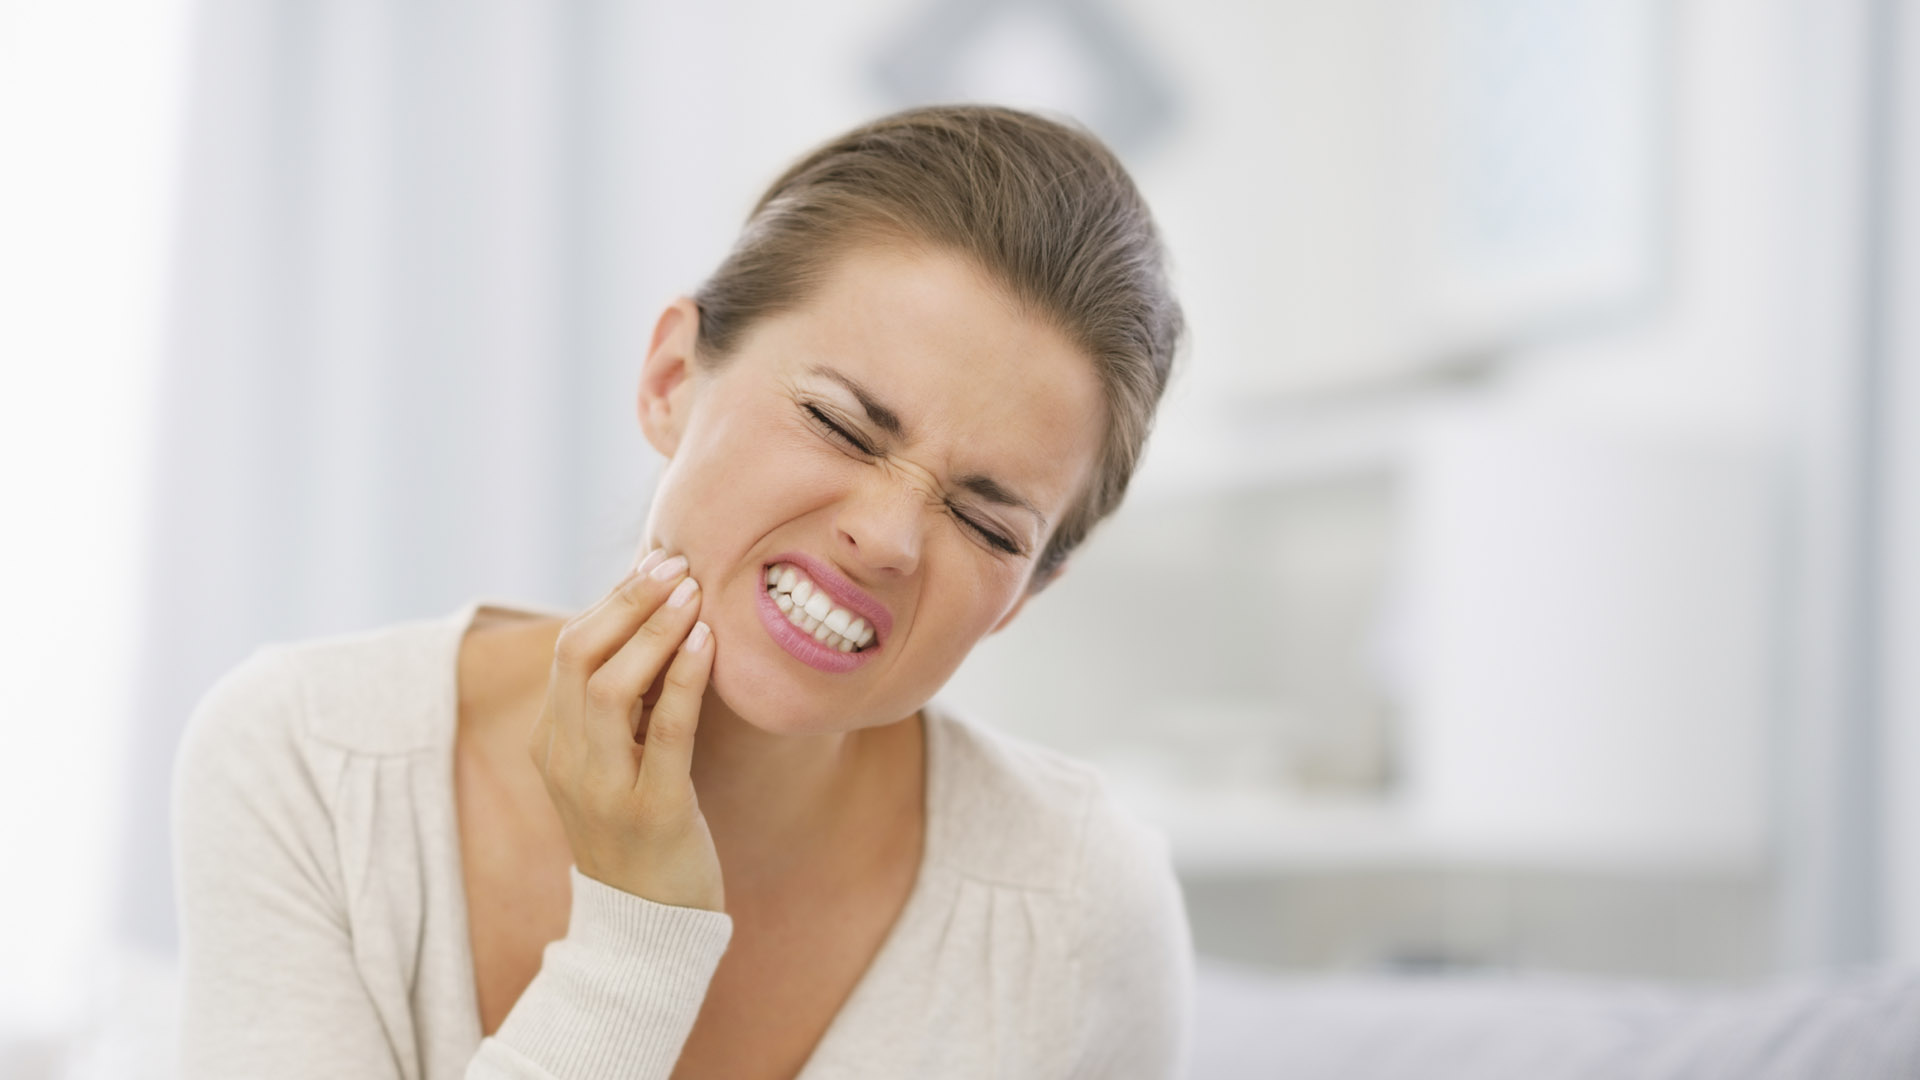 La gingivitis puede provocar irritación, enrojecimiento, inflamación e hinchazón en las encías